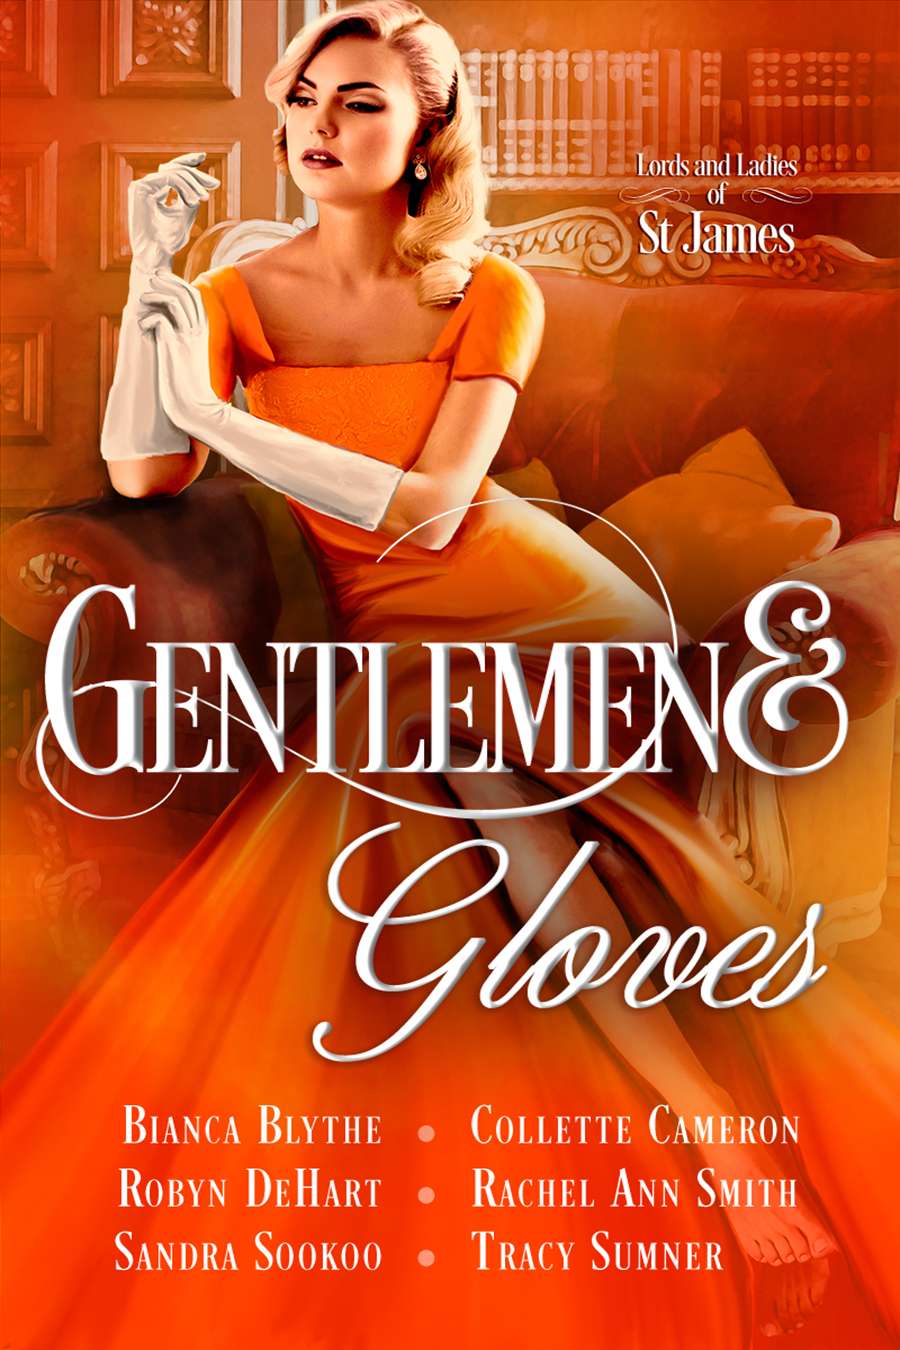 Gentlemen and Gloves 43